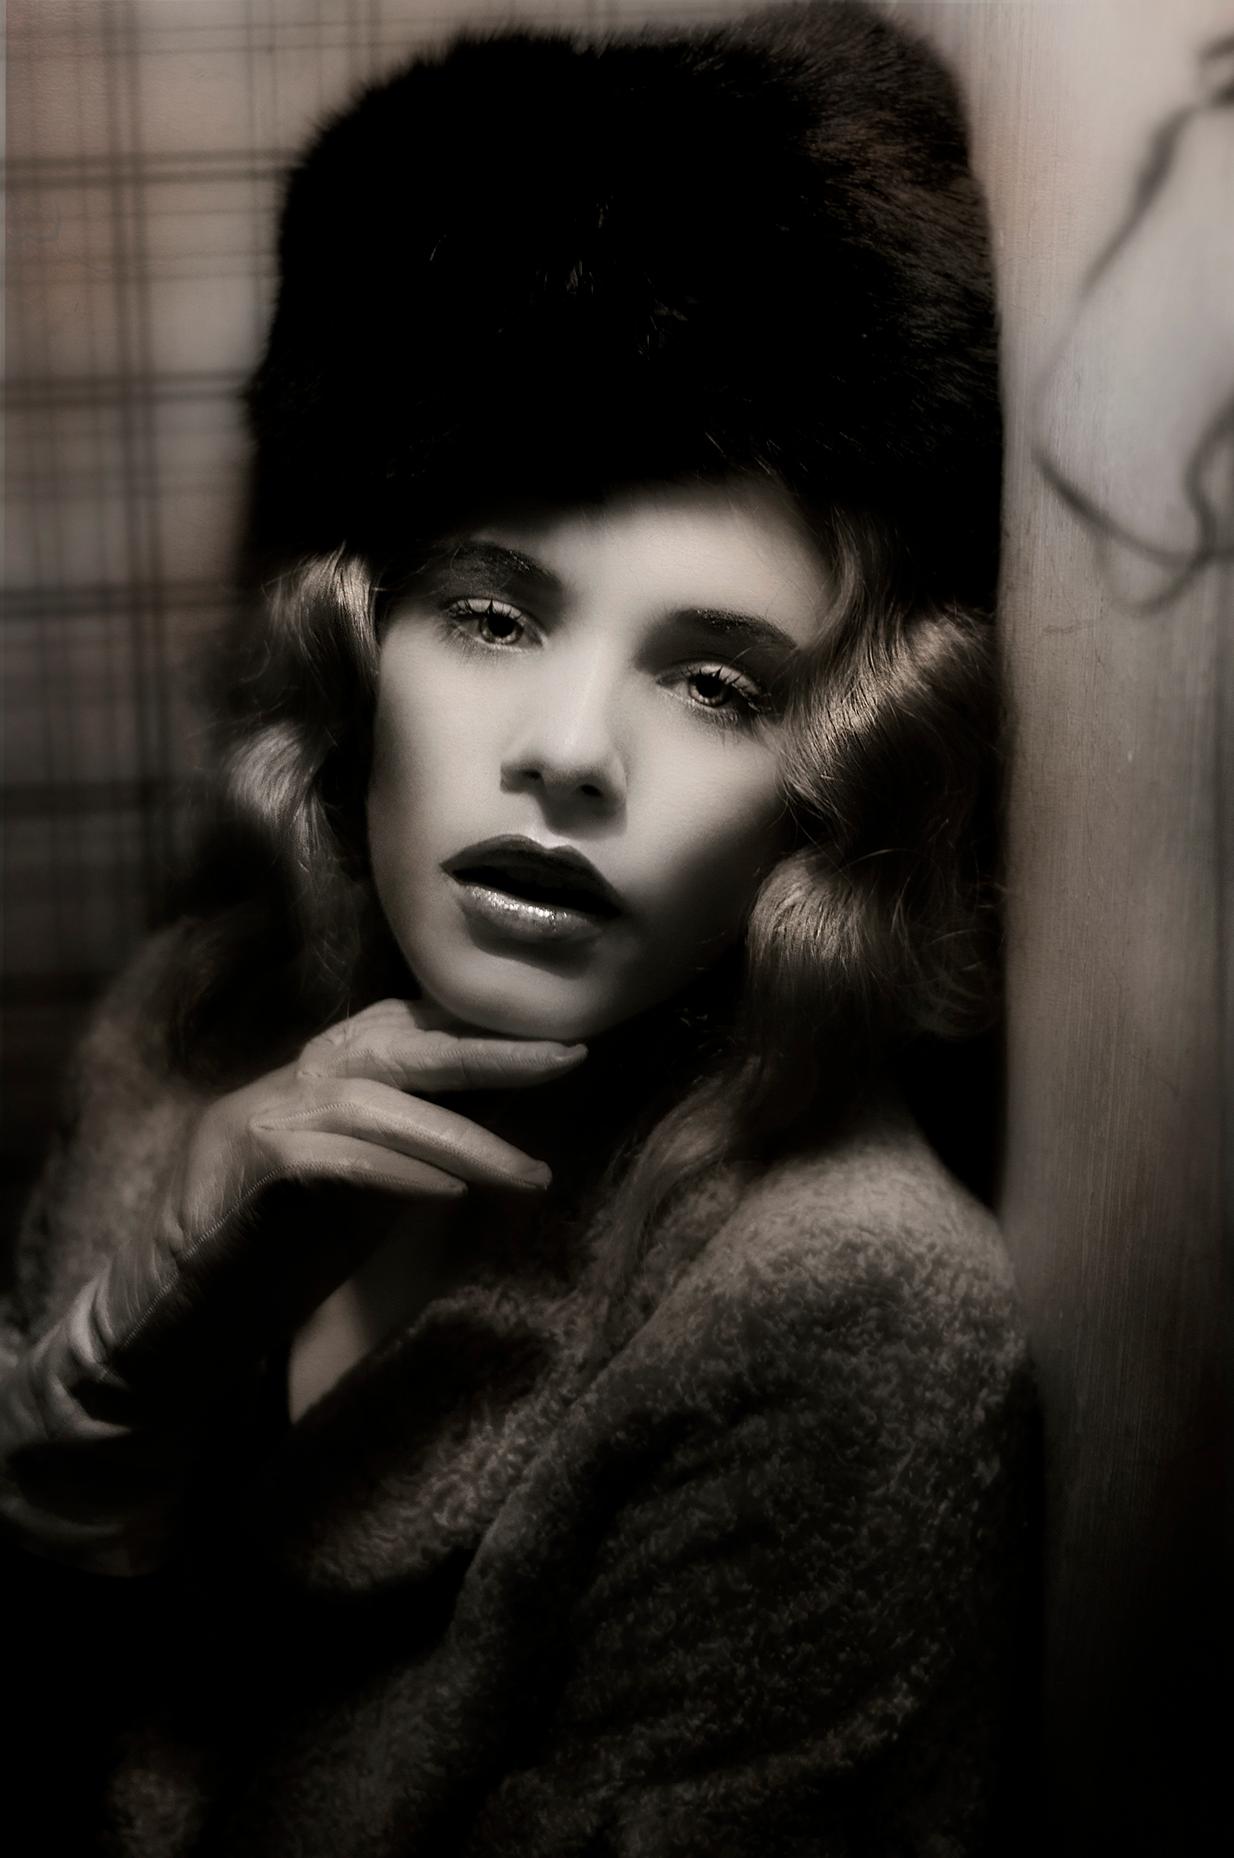 Lèa Bon Black and White Photograph - Dietrich File #2, Portrait. Limited edition fashion color photograph. 